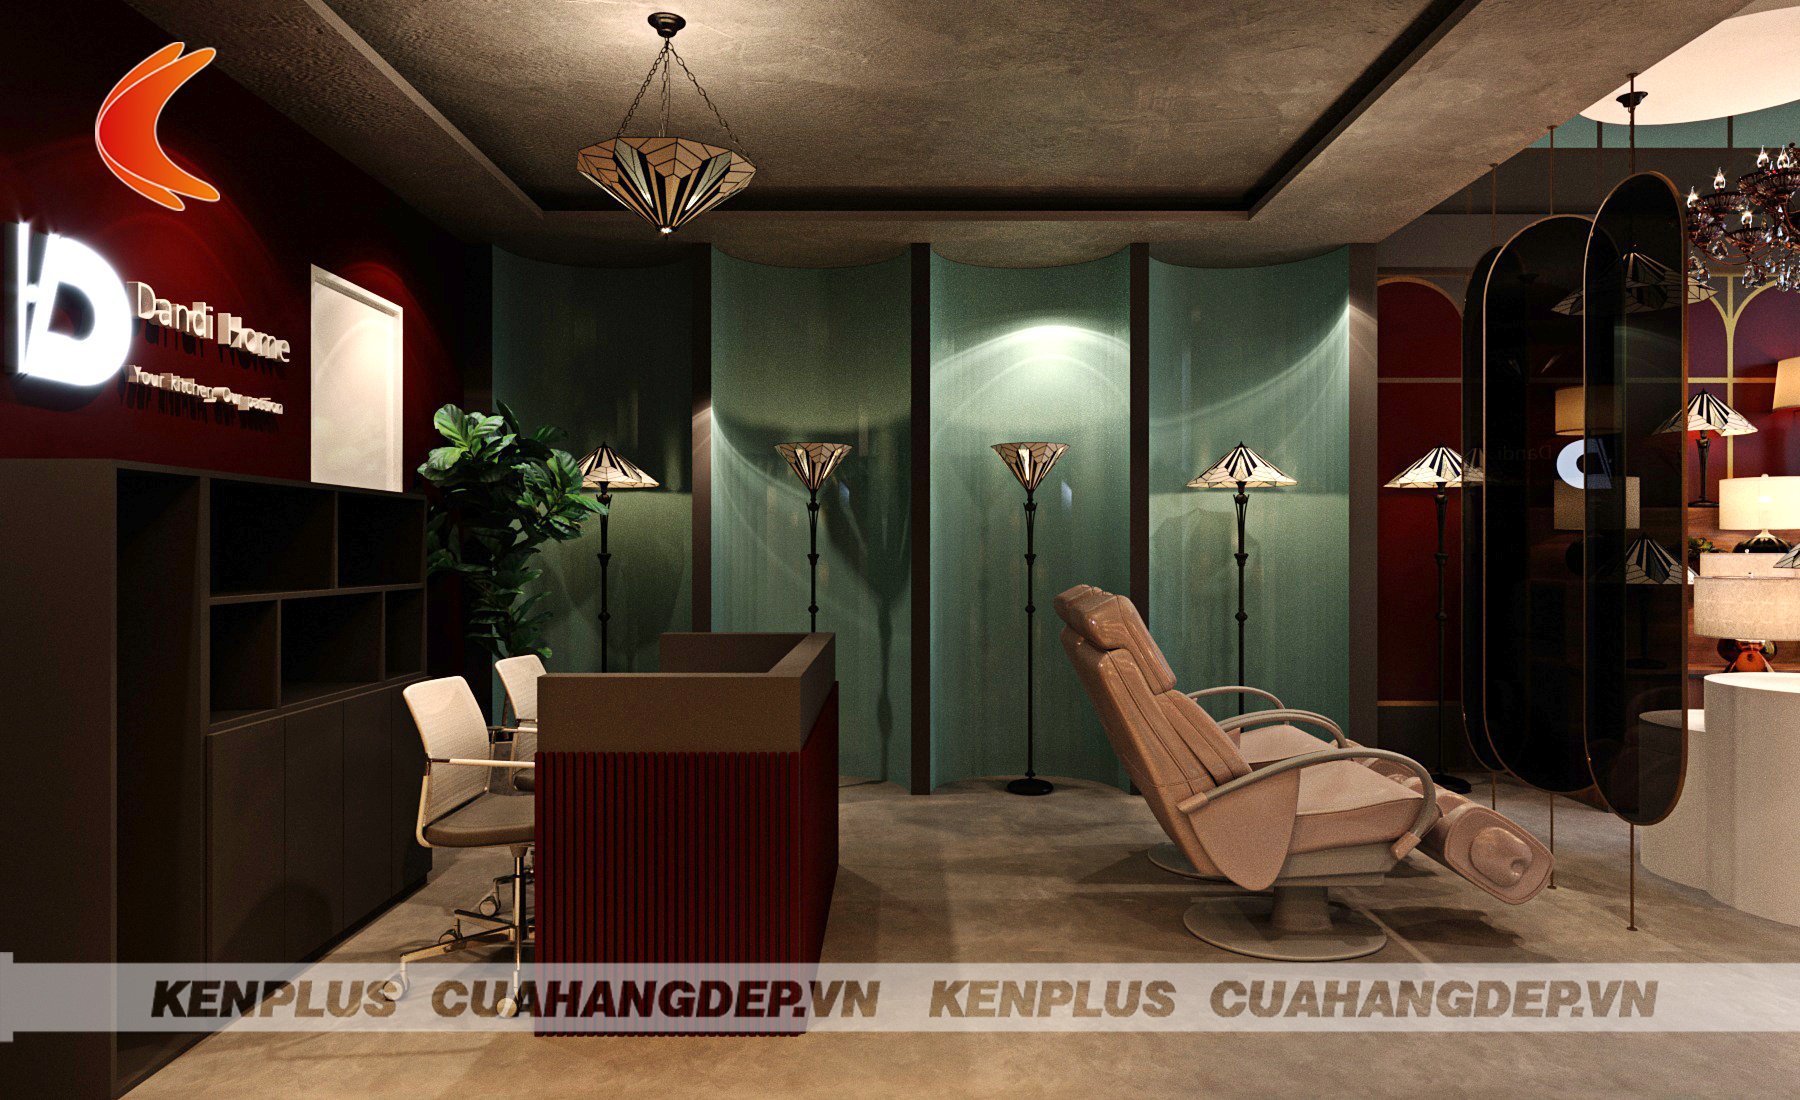 Thiết kế showroom đèn Dandi Home hiện đại đầy cuốn hút